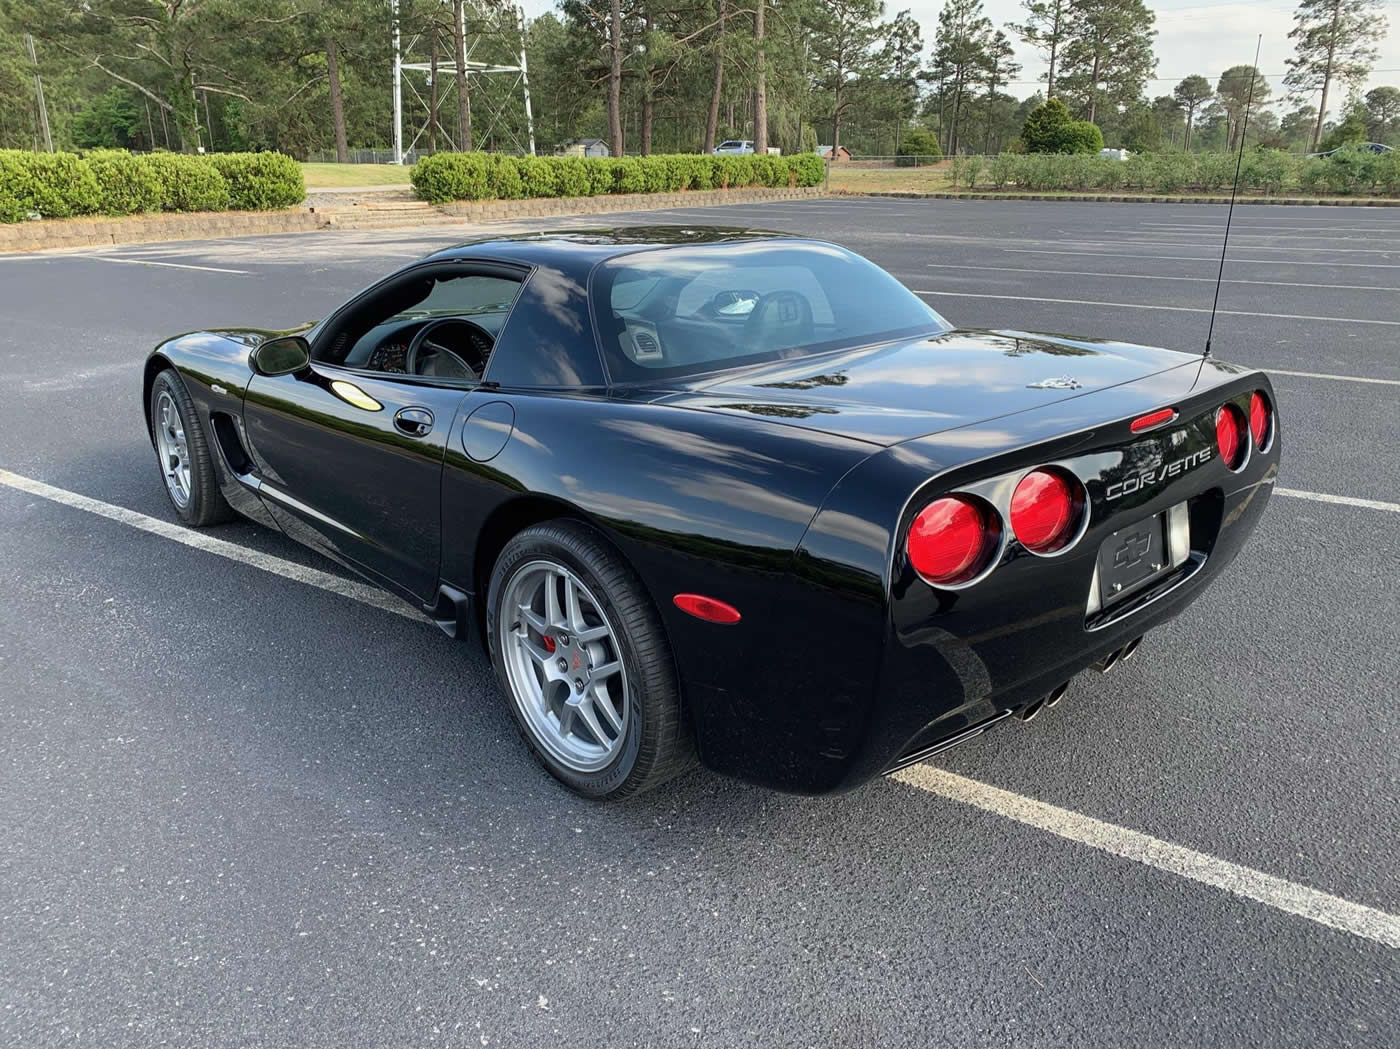 2003 Corvette Z06 in Black